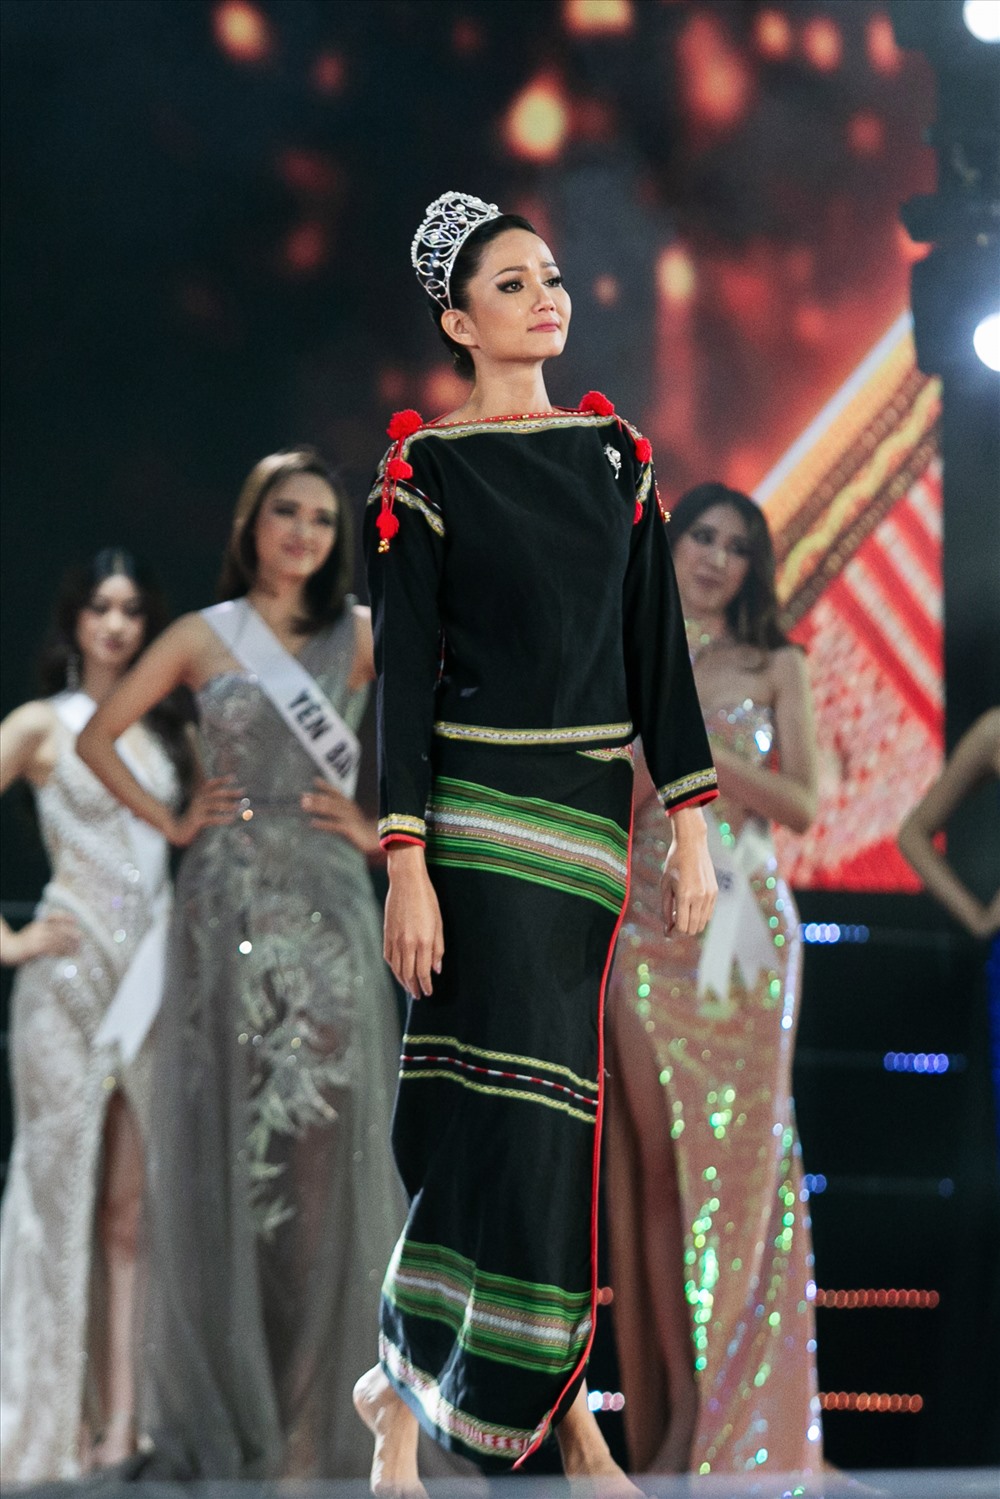 Hoa hậu H’Hen Niê xuất hiện với đôi chân trần và trang phục Êđê, đội vương miện trước khi trao lại danh hiệu cho người kế vị tiếp theo. Ảnh: MUVN.